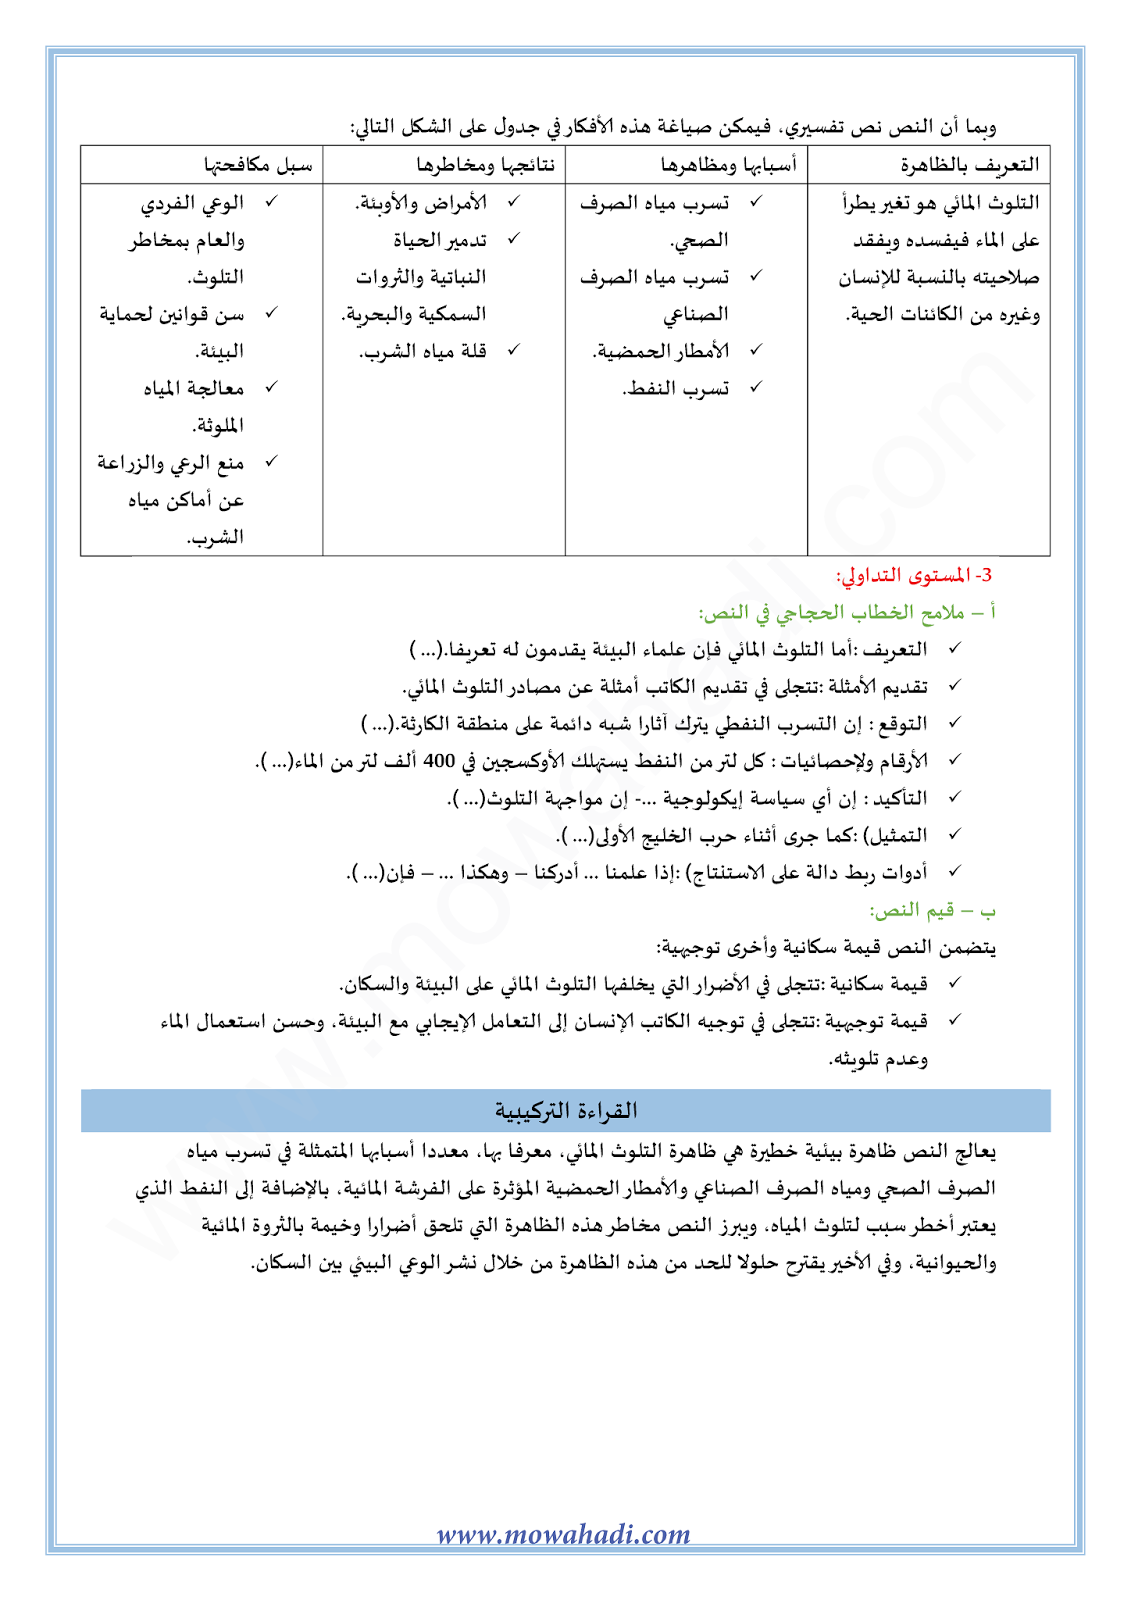 تحضير النص القرائي التلوث المائي للسنة الثالثة اعدادي في مادة اللغة العربية 19-cours-ar-almokhtar3_003